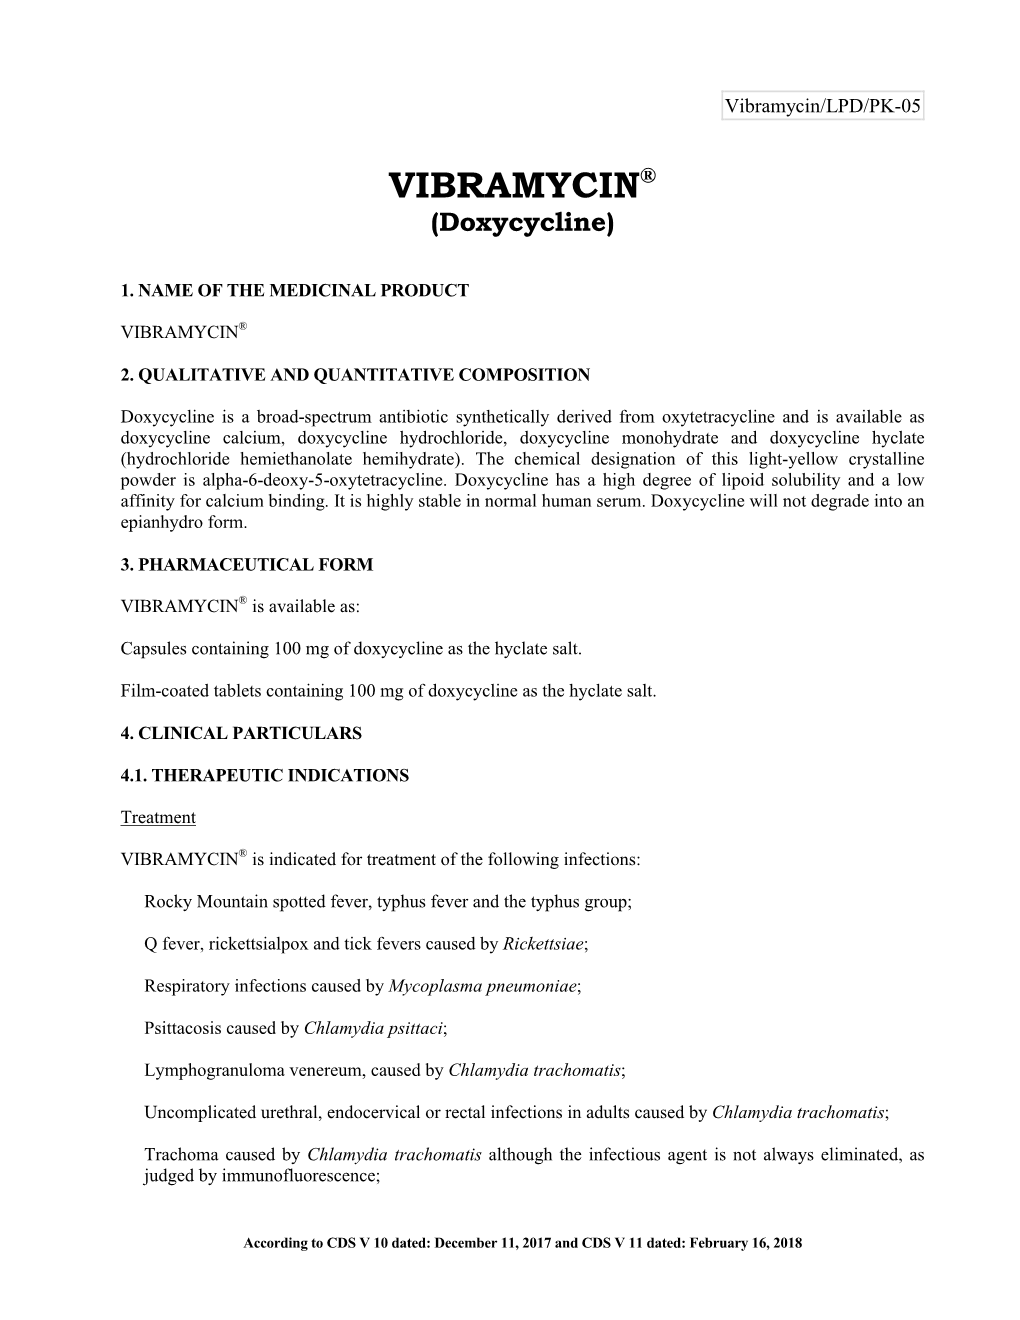 VIBRAMYCIN® (Doxycycline)